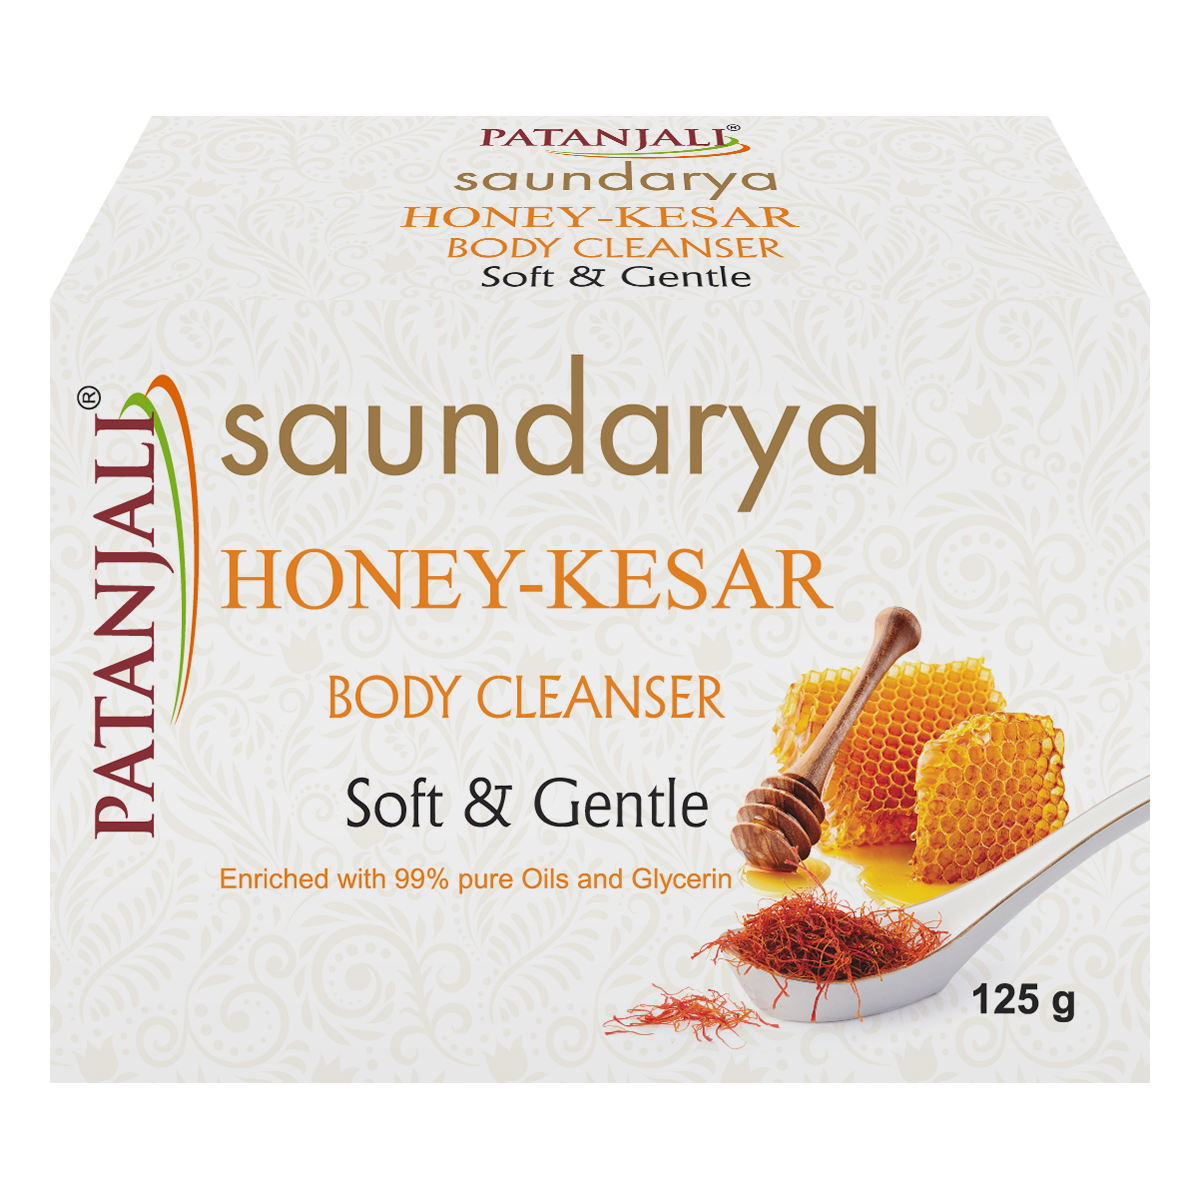 Patanjali Saundarya Honey-kesar Body Cleanser